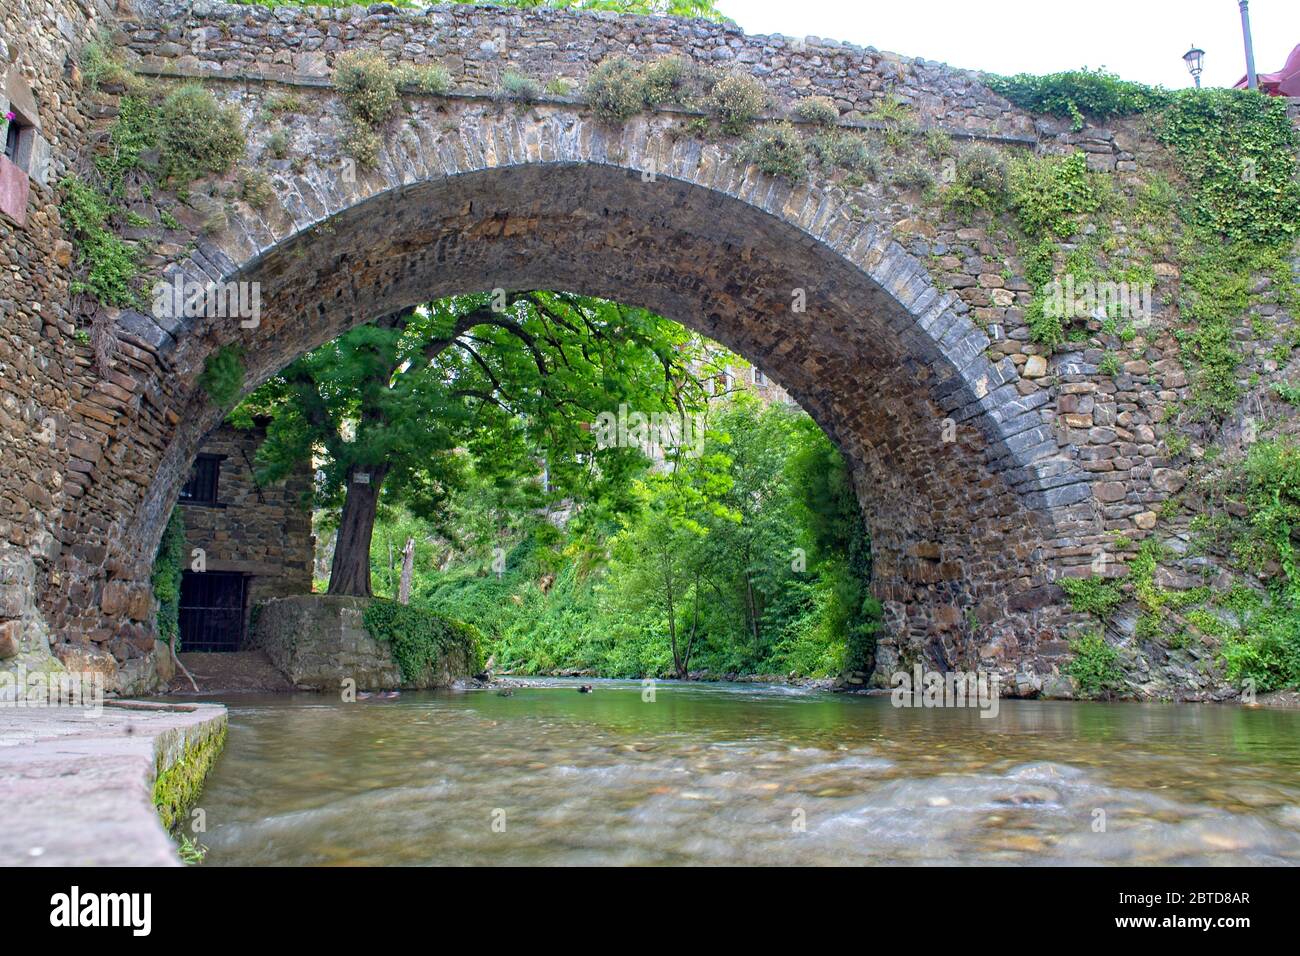 La rivière Quiviesa coule sous un ancien pont en pierre à Potes, Cantabrie, Espagne. Banque D'Images